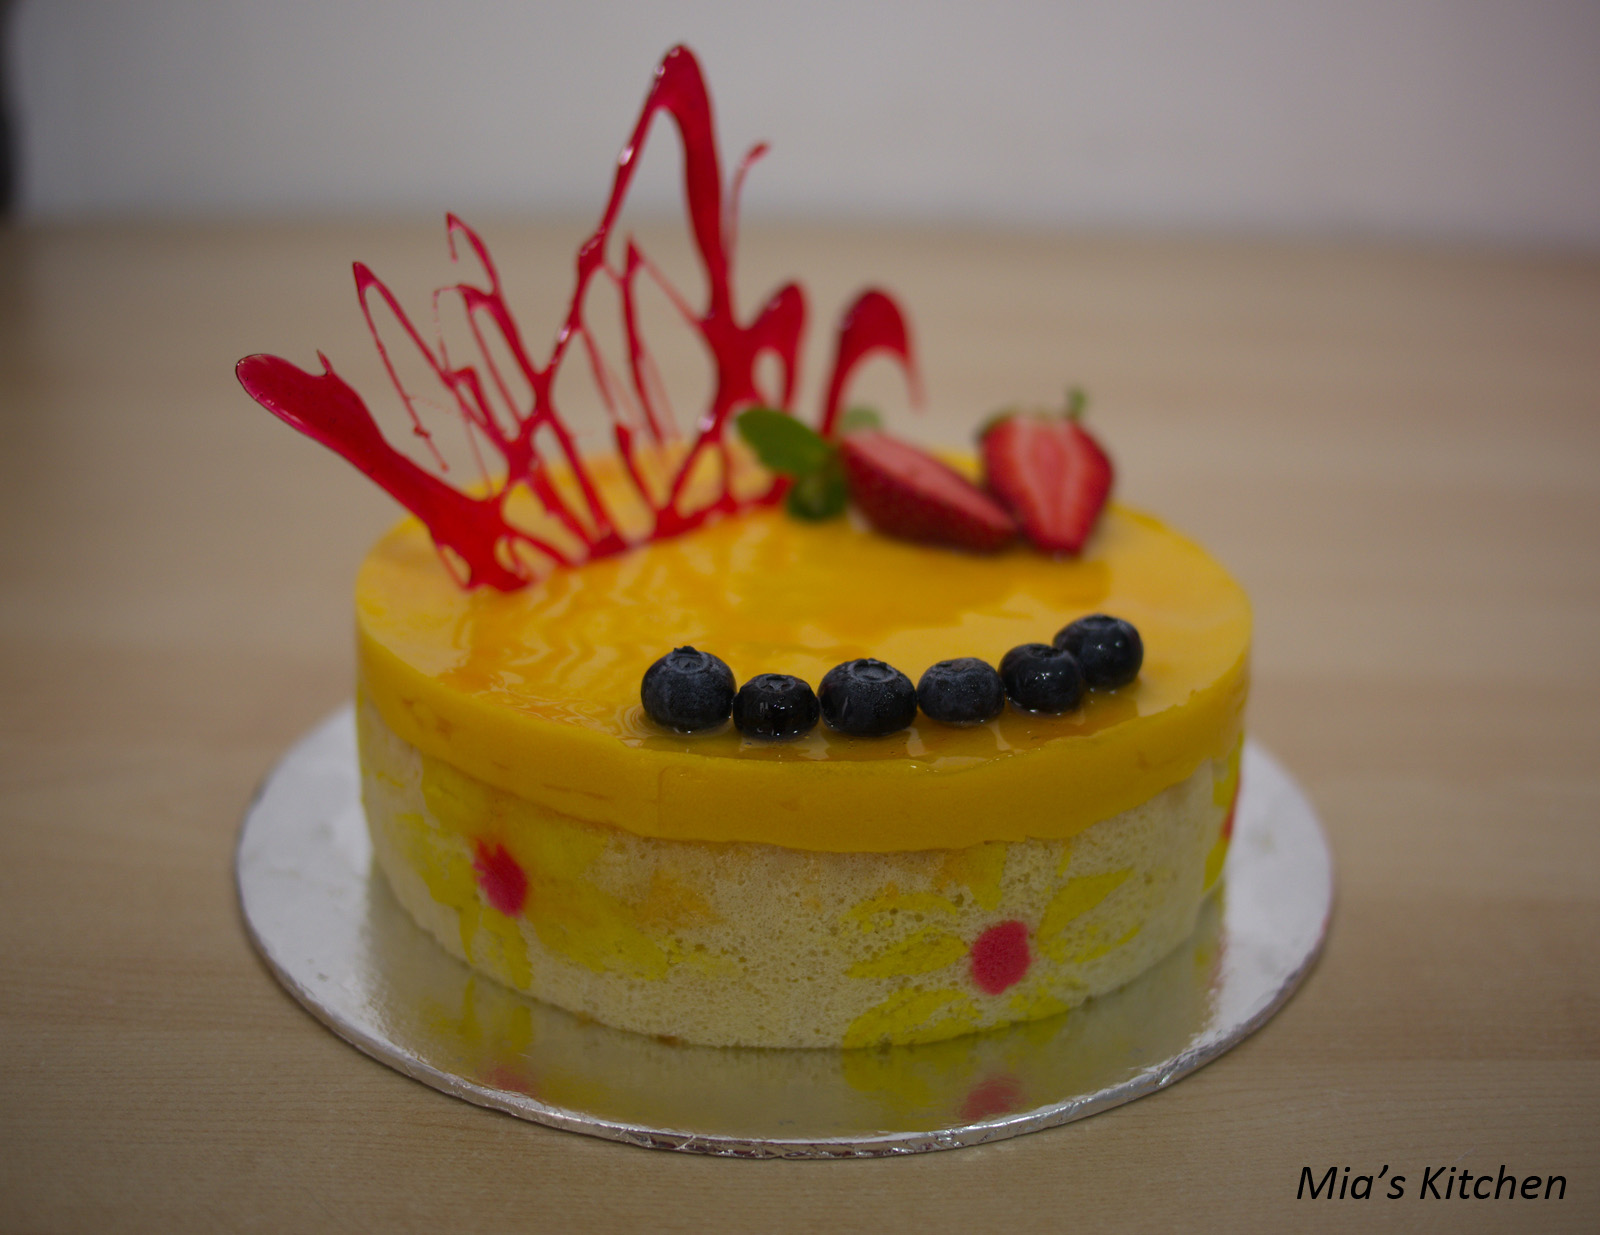 「巴黎贝甜」推出5款七夕限定新品：想见你玫瑰樱桃慕斯蛋糕、相思蓝莓酸奶慕斯蛋糕…-FoodTalks全球食品资讯